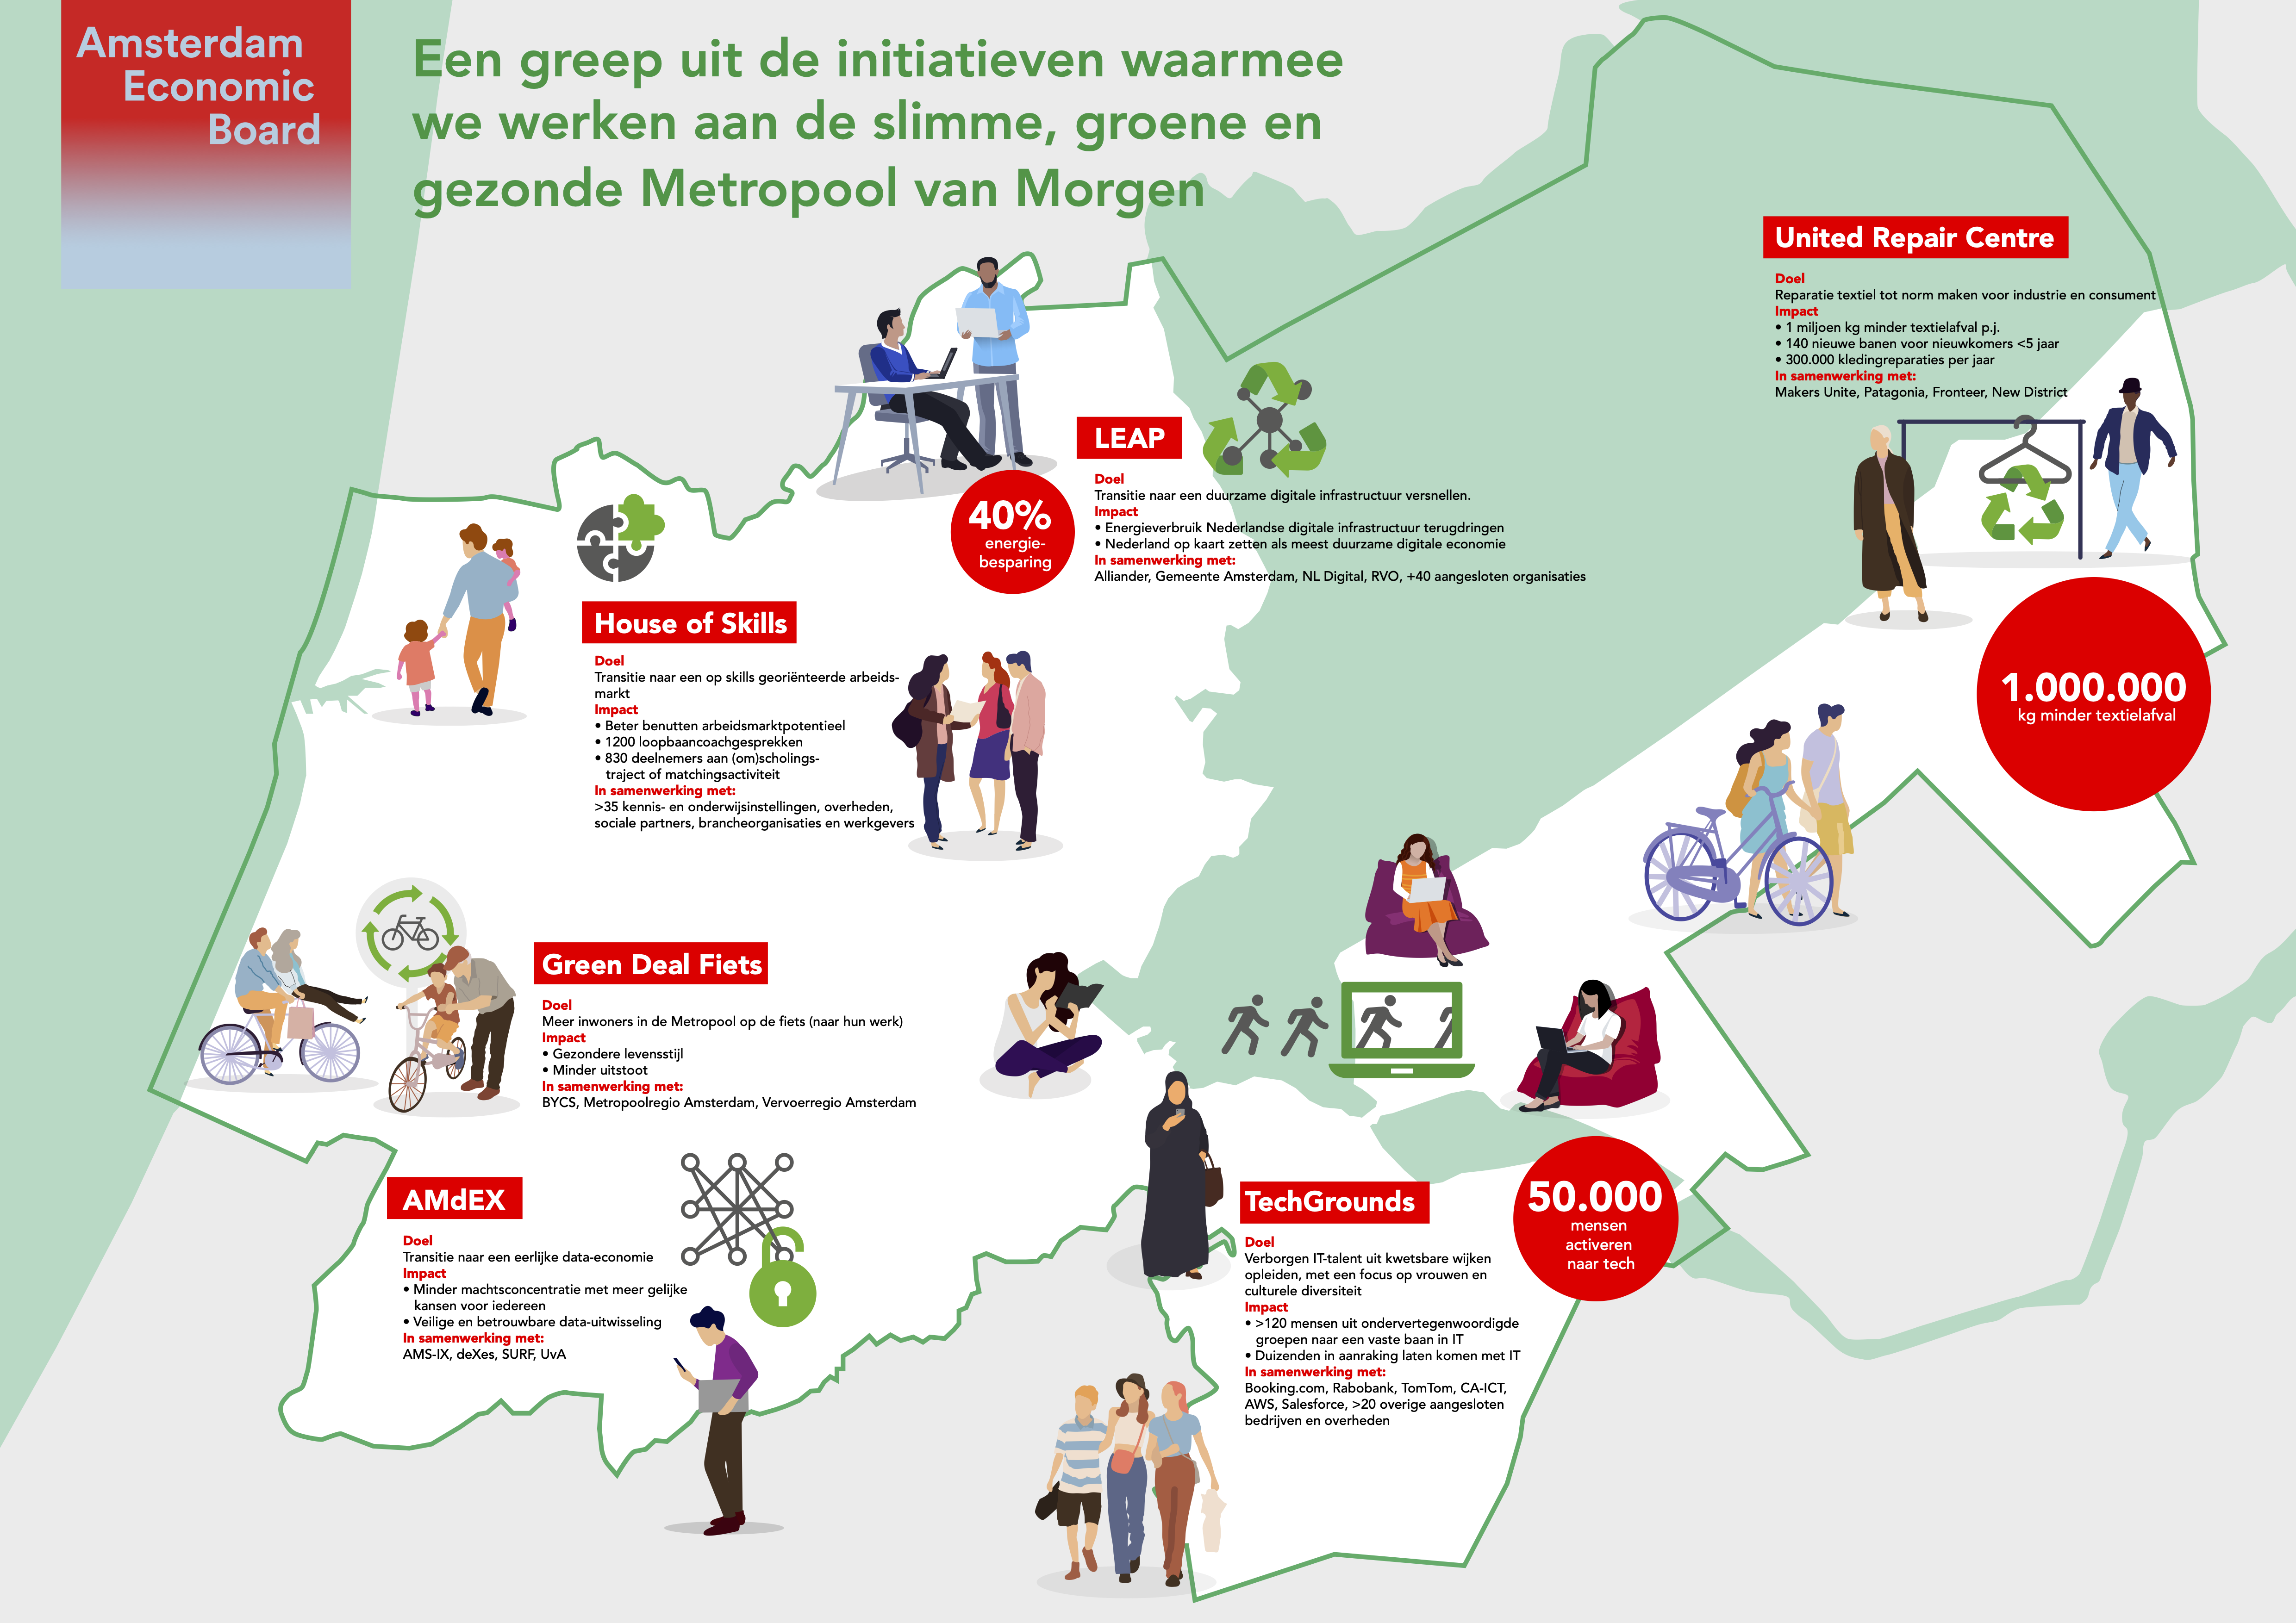 Slimme, groene en gezonde Metropool van Morgen | Amsterdam Economic Board